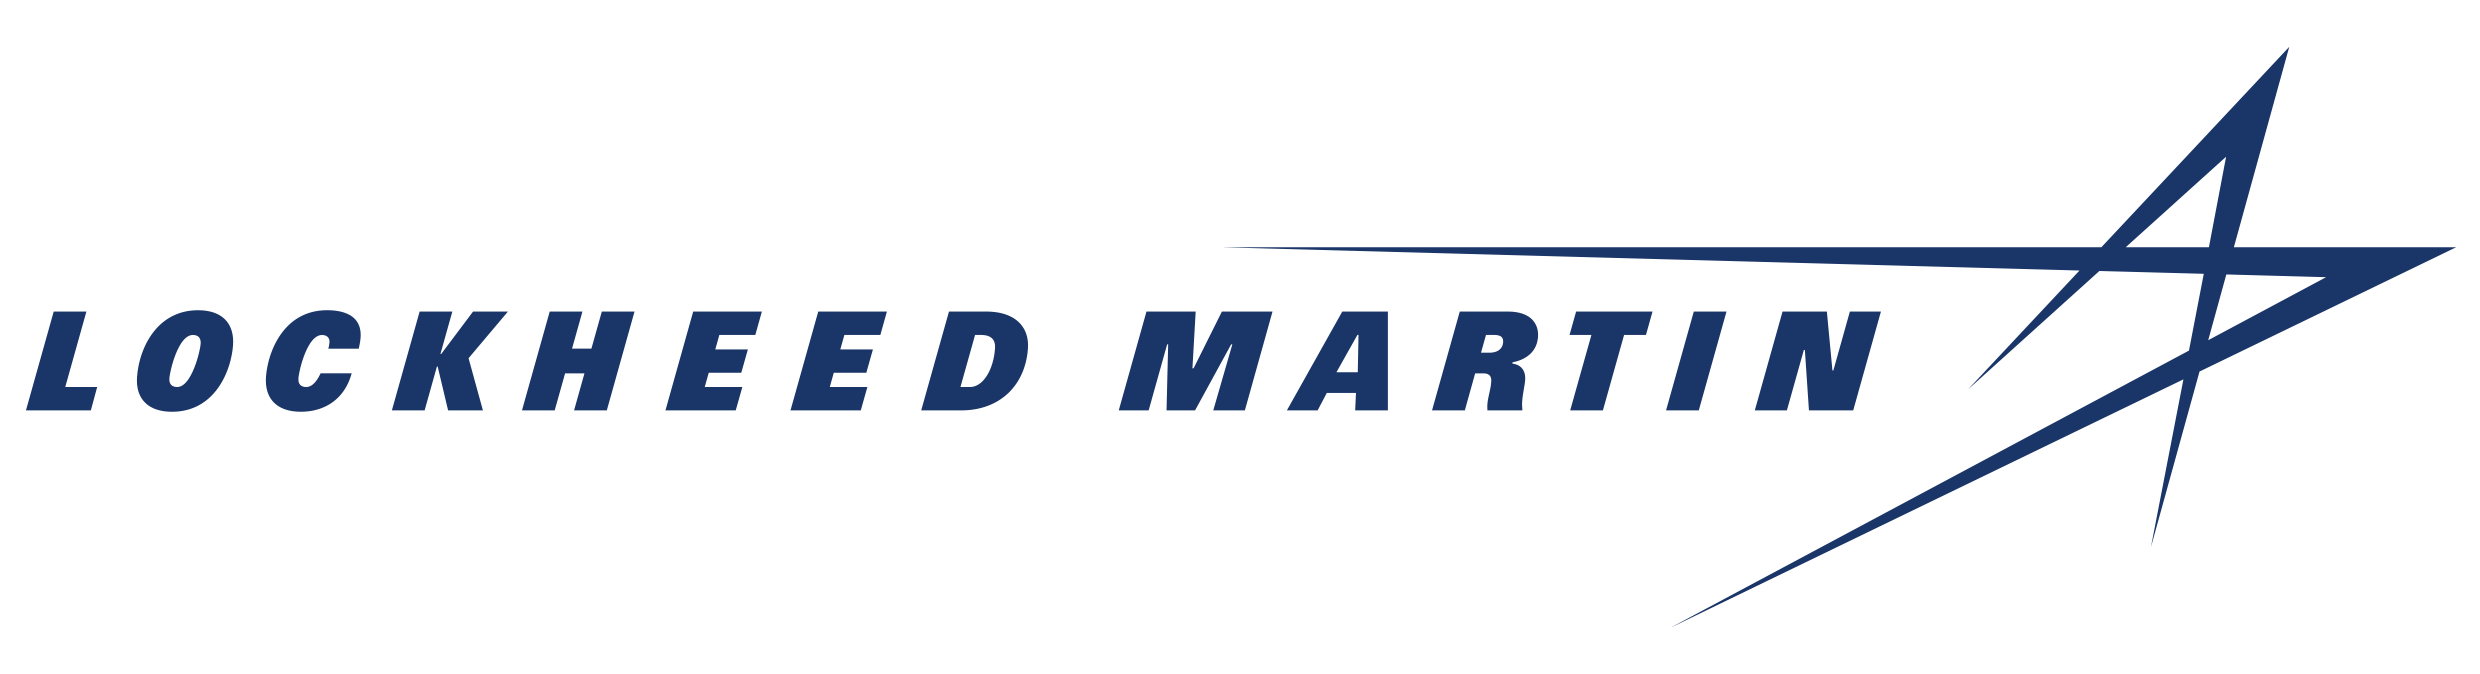 Lockheed Martin Logo: Blue text and star